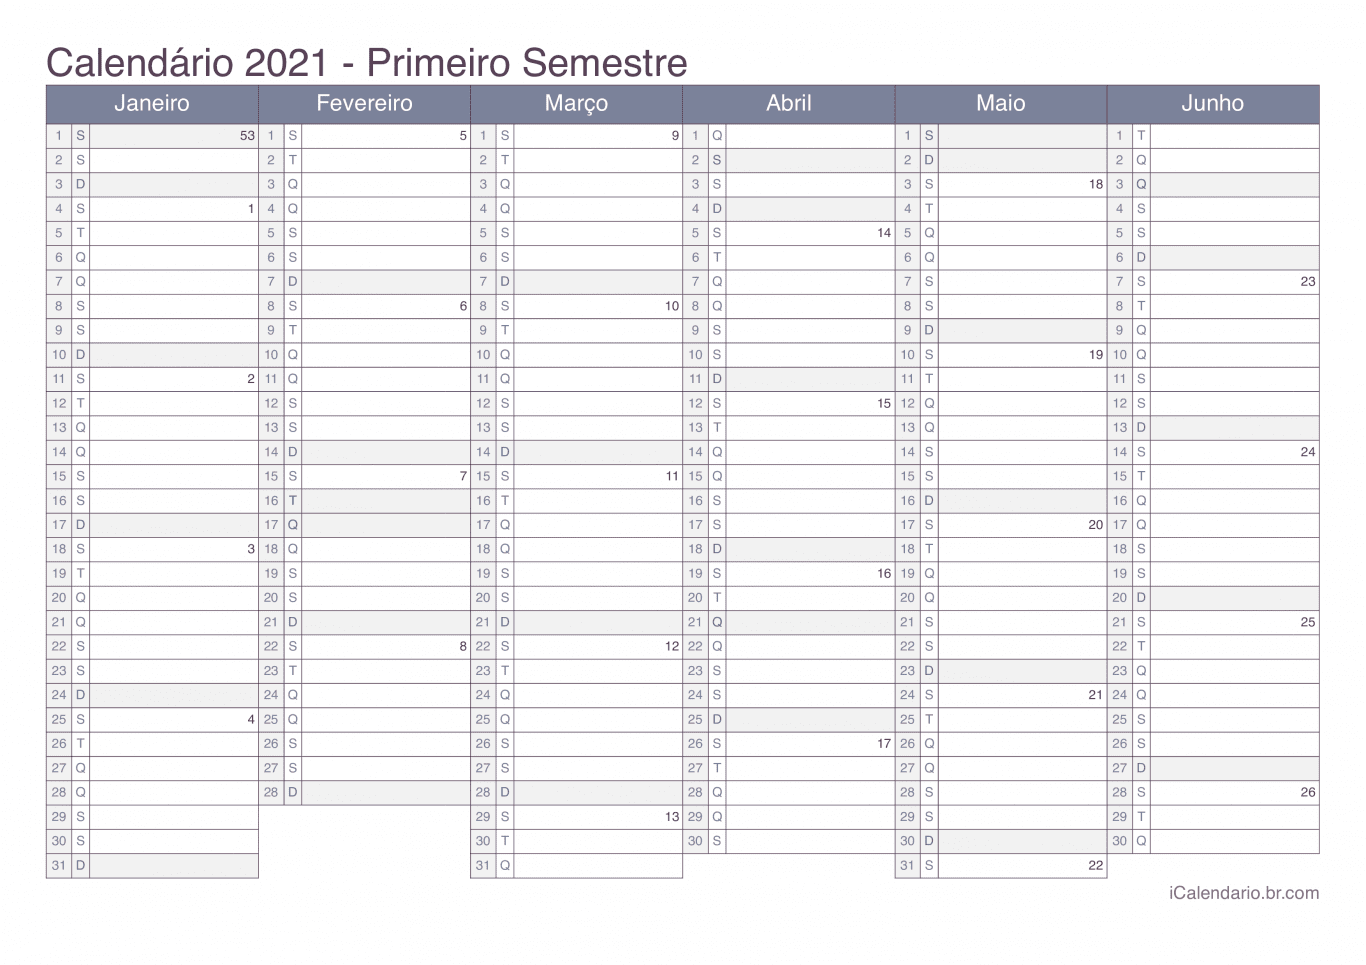 Calendário por semestre com números da semana 2021 - Office